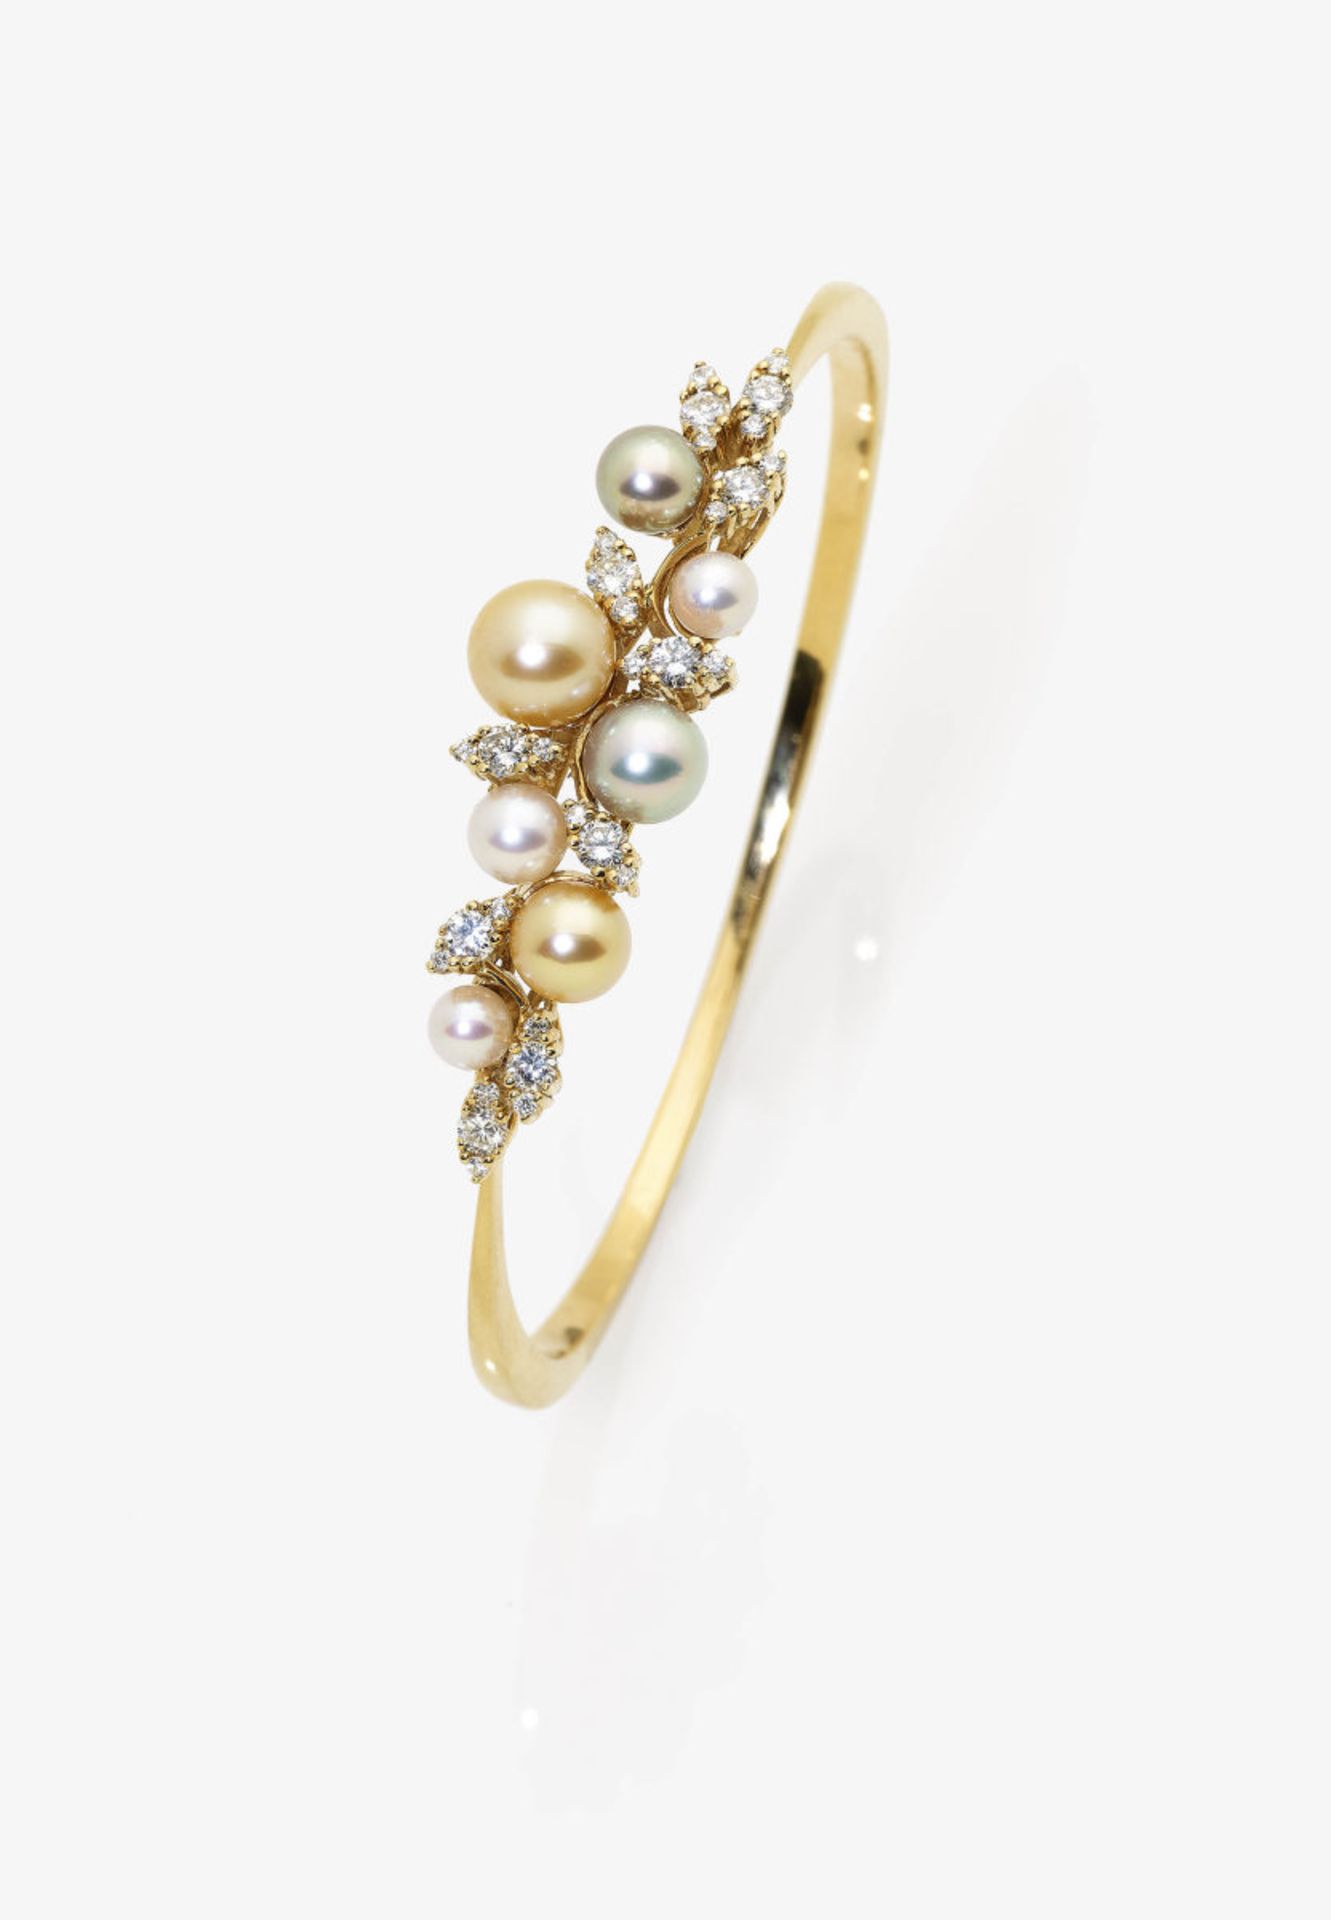 A Vari-Coloured Cultured Pearl and Diamond Bangle